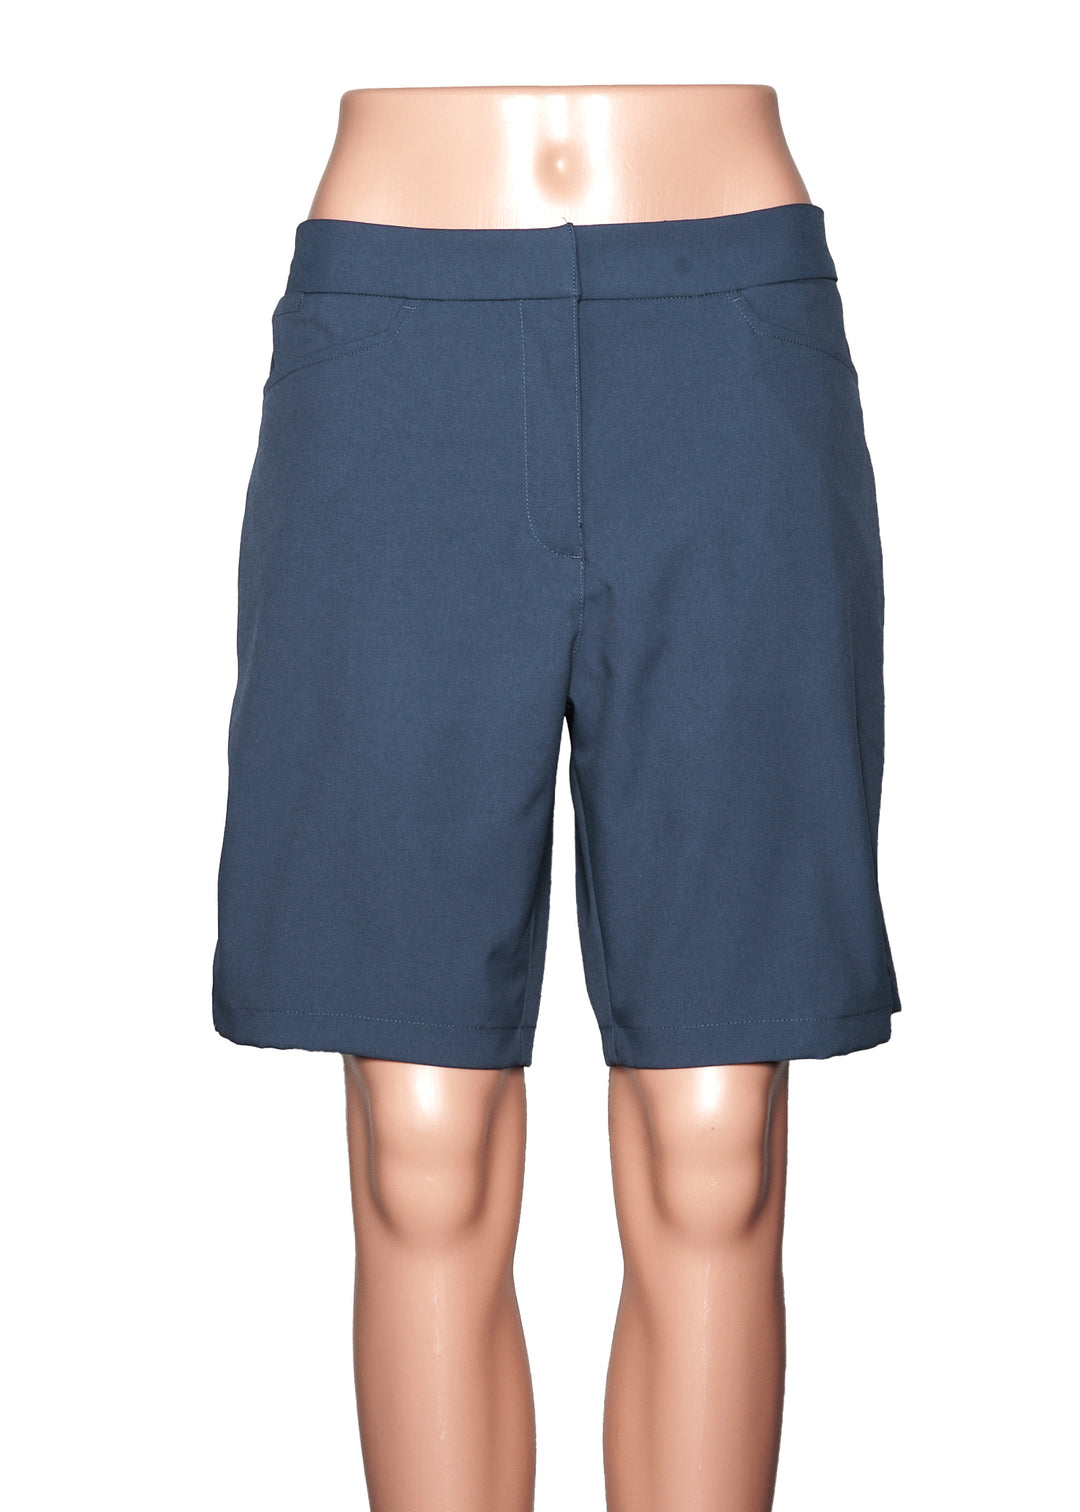 Puma Shorts - Blue - Size Large - Skorzie